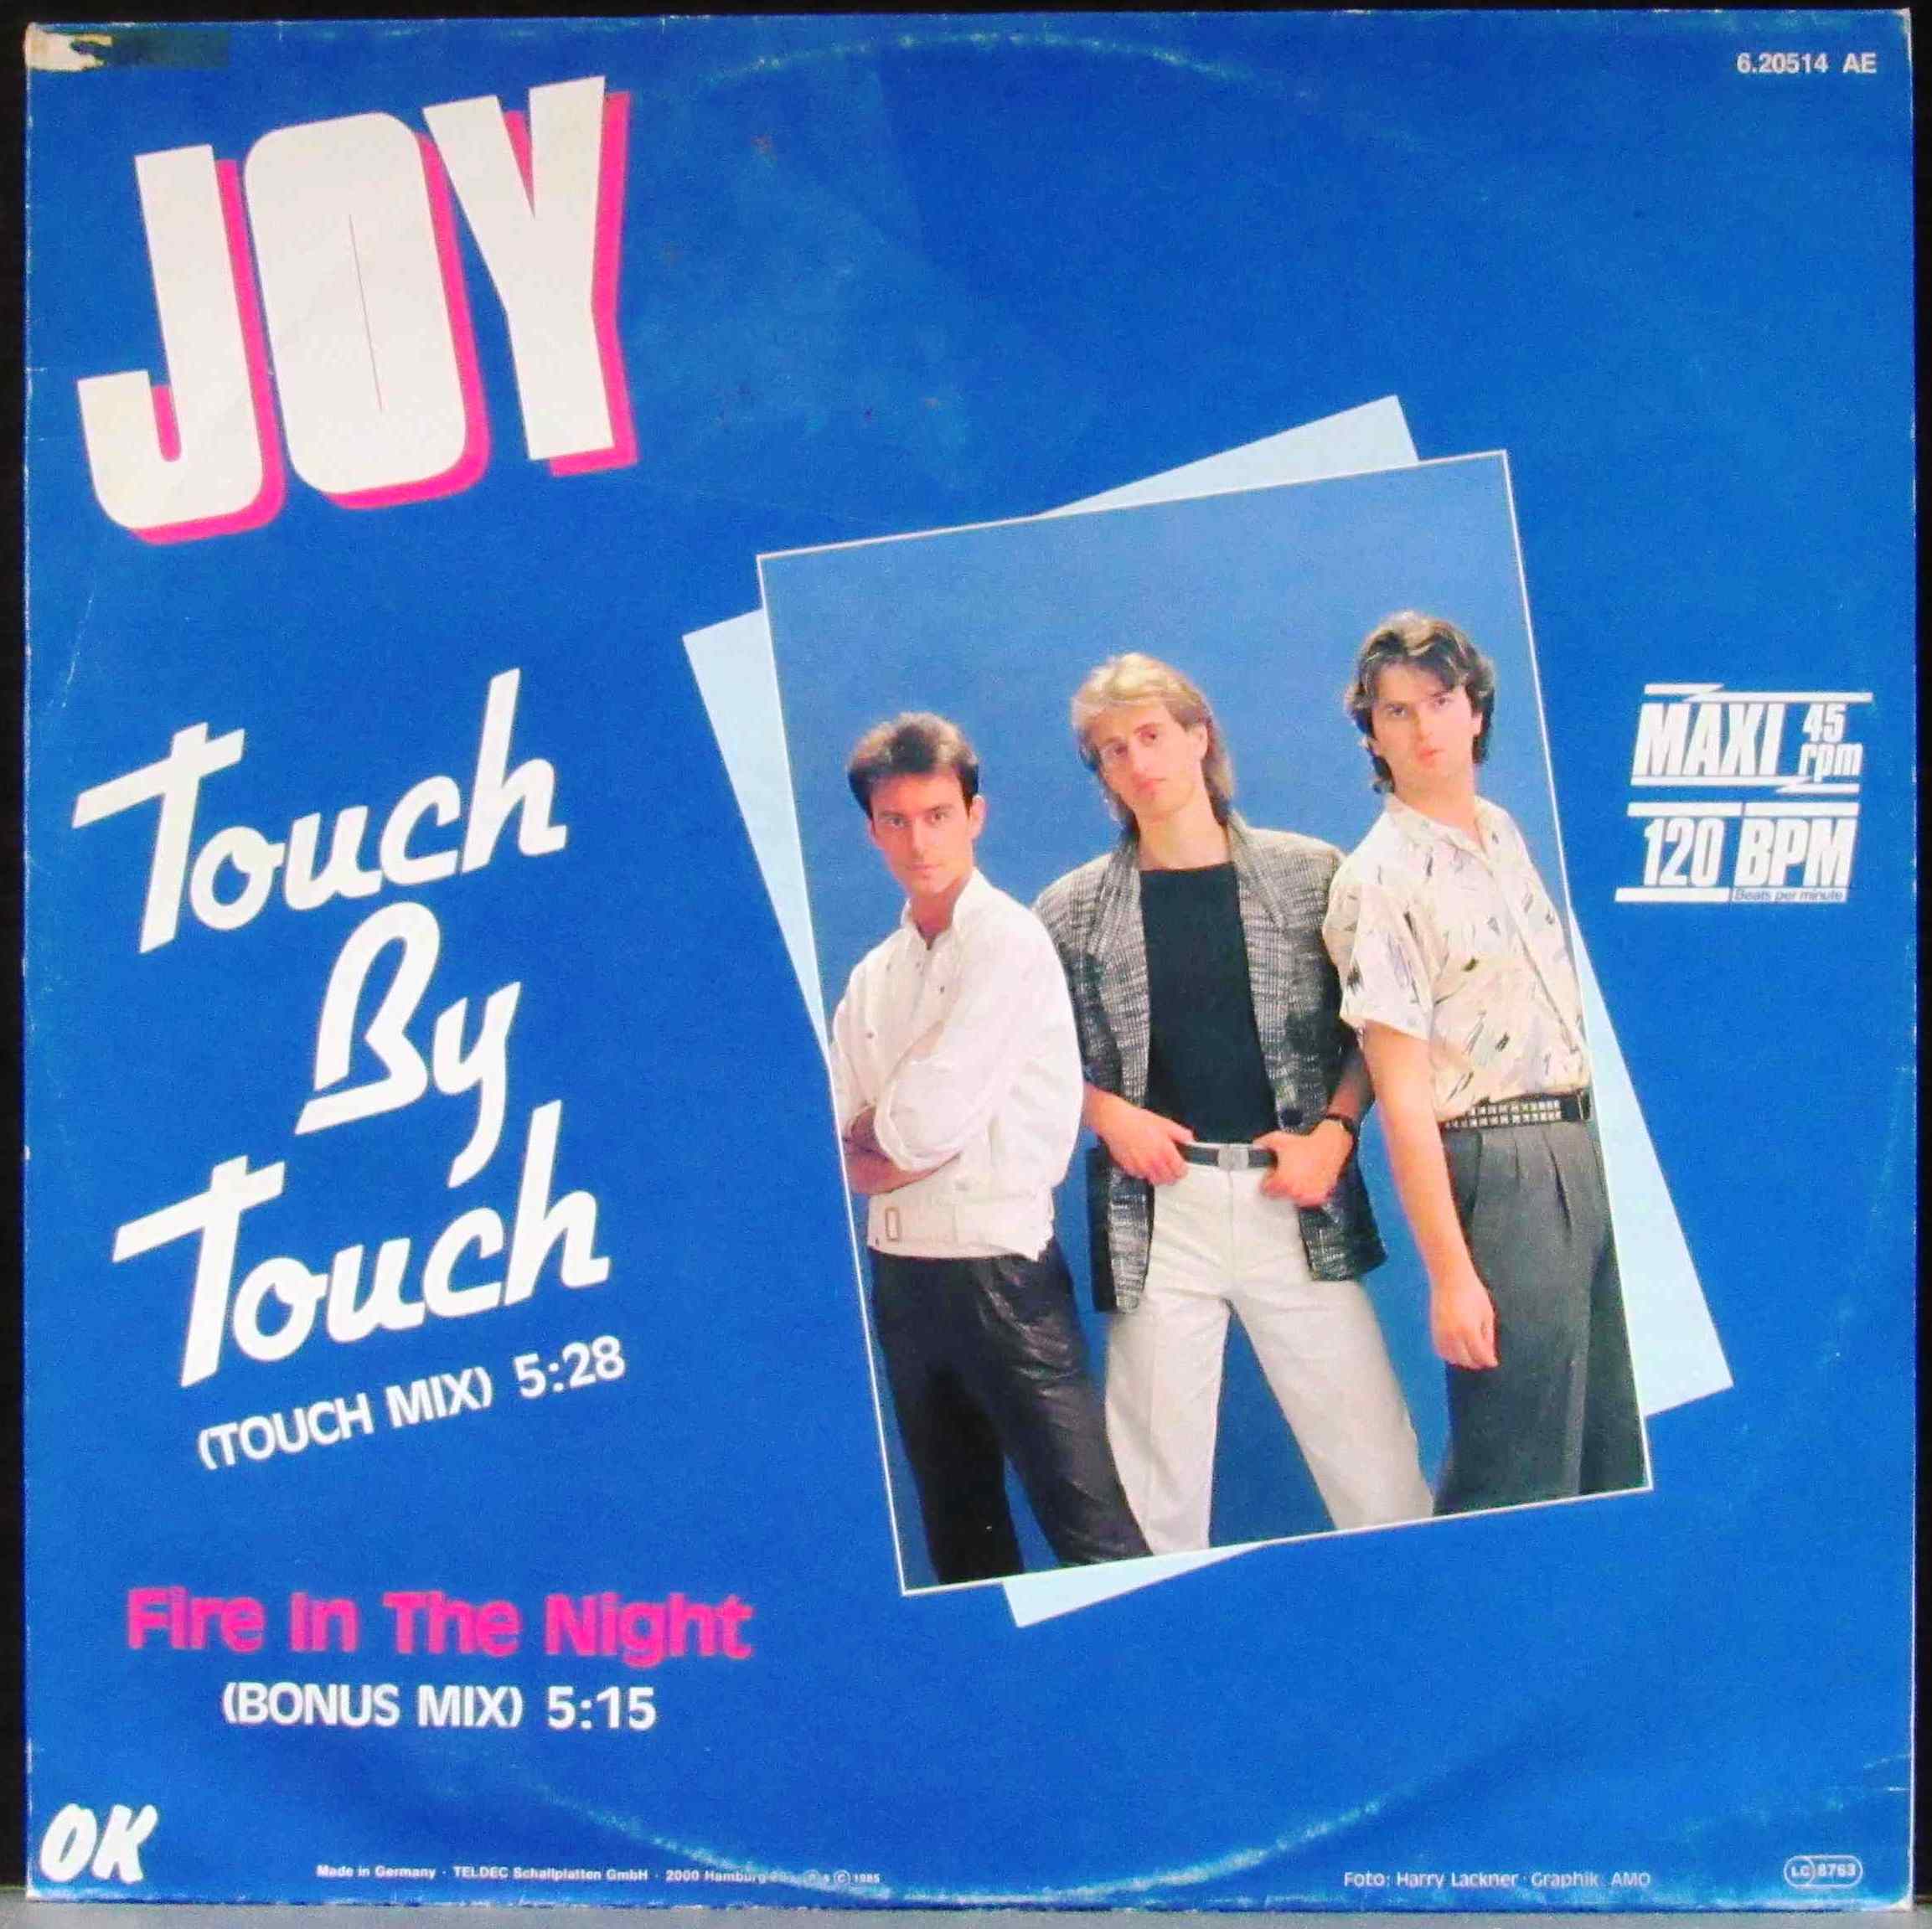 Хит группы джой. Joy Touch by Touch. Joy группа 1986. Joy обложки альбомов. Joy Touch by Touch обложка.